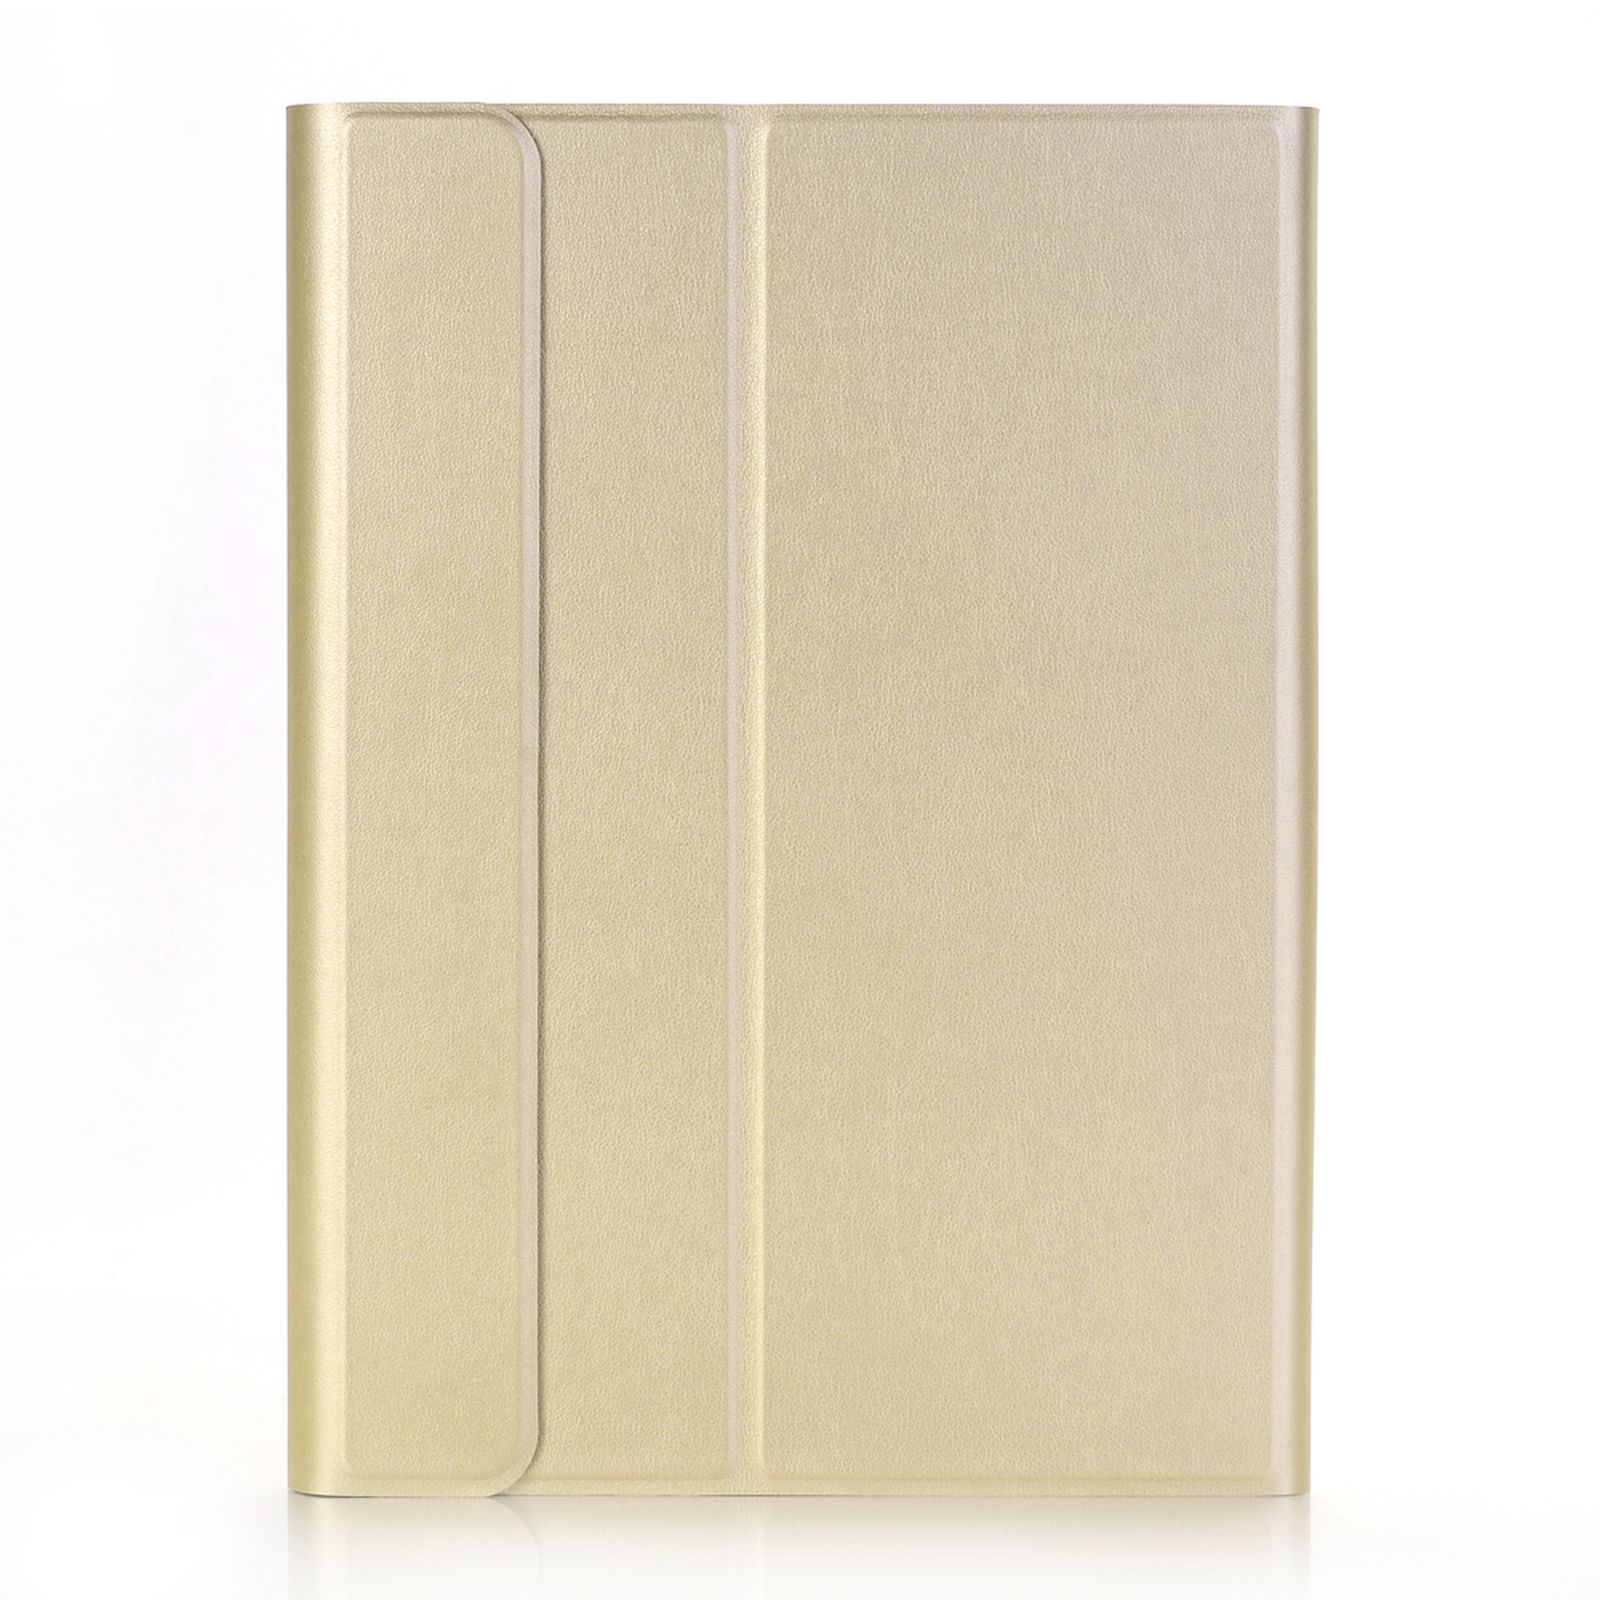 LOBWERK 3in1 Schutzhülle Case Bookcover 2019/2020/2021 für iPad gold Kunststoff, 10.2 Zoll Apple iPad 10.2